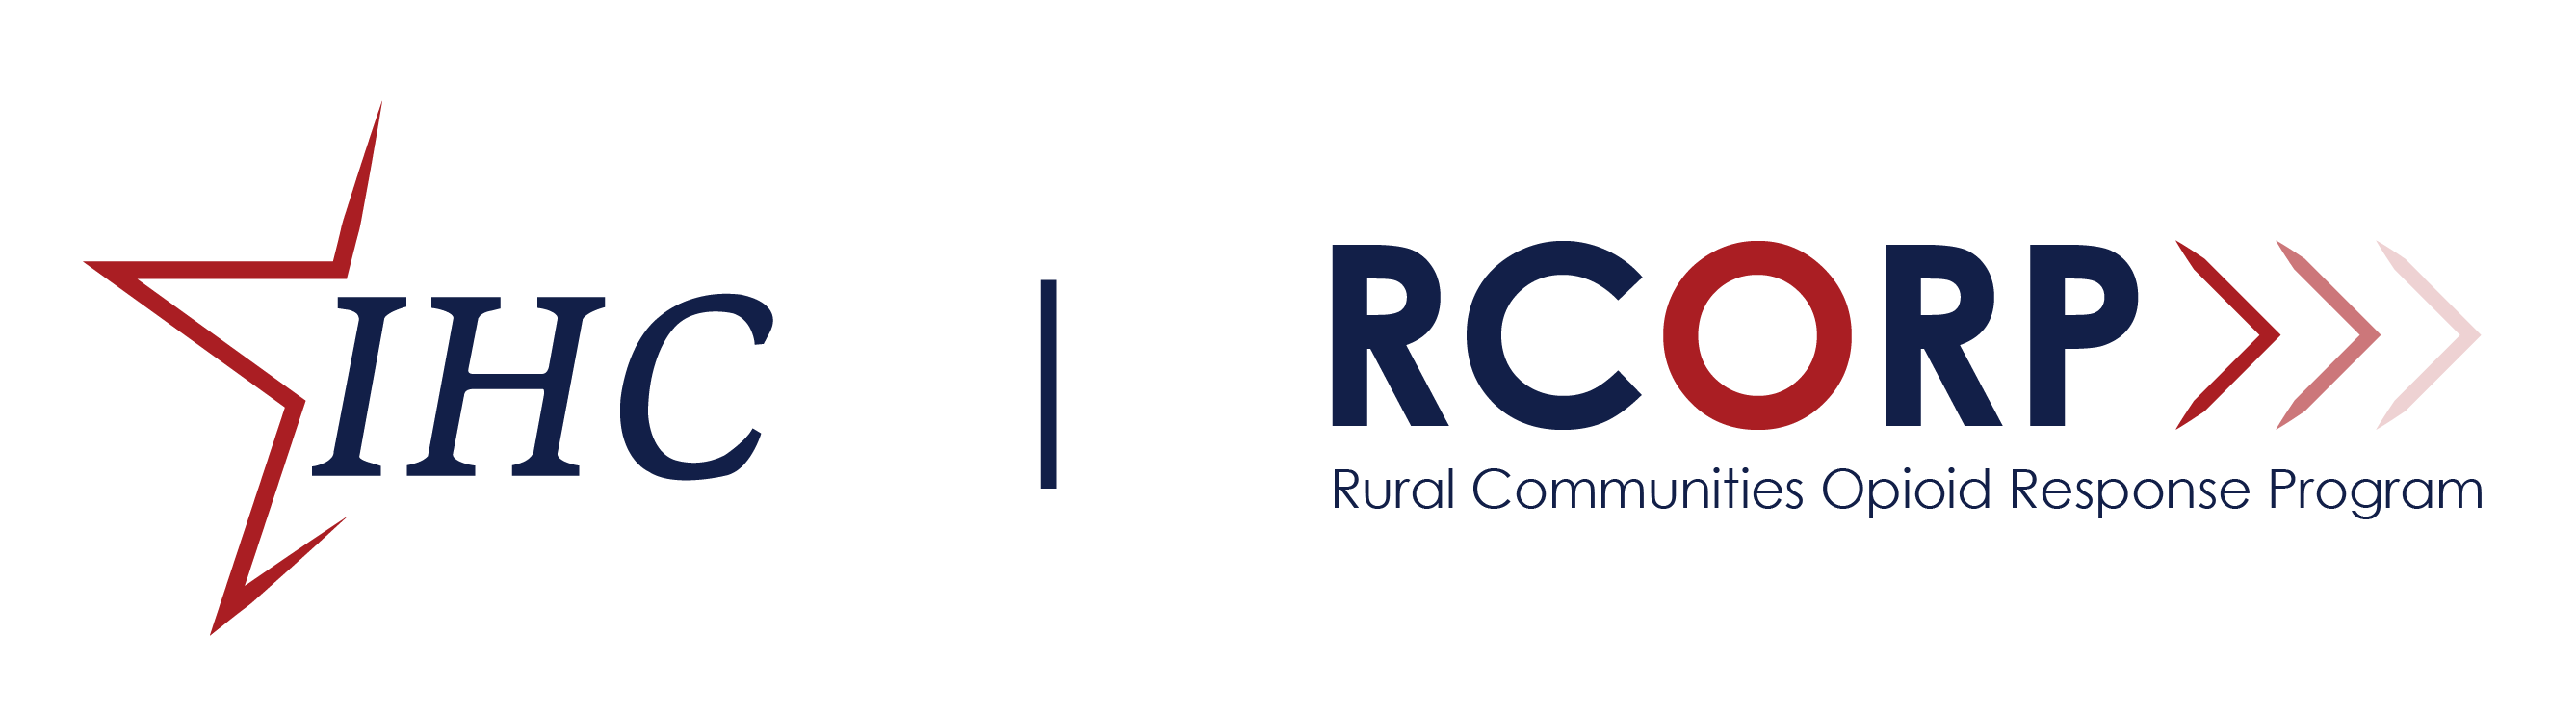 IHC RCORP Logo